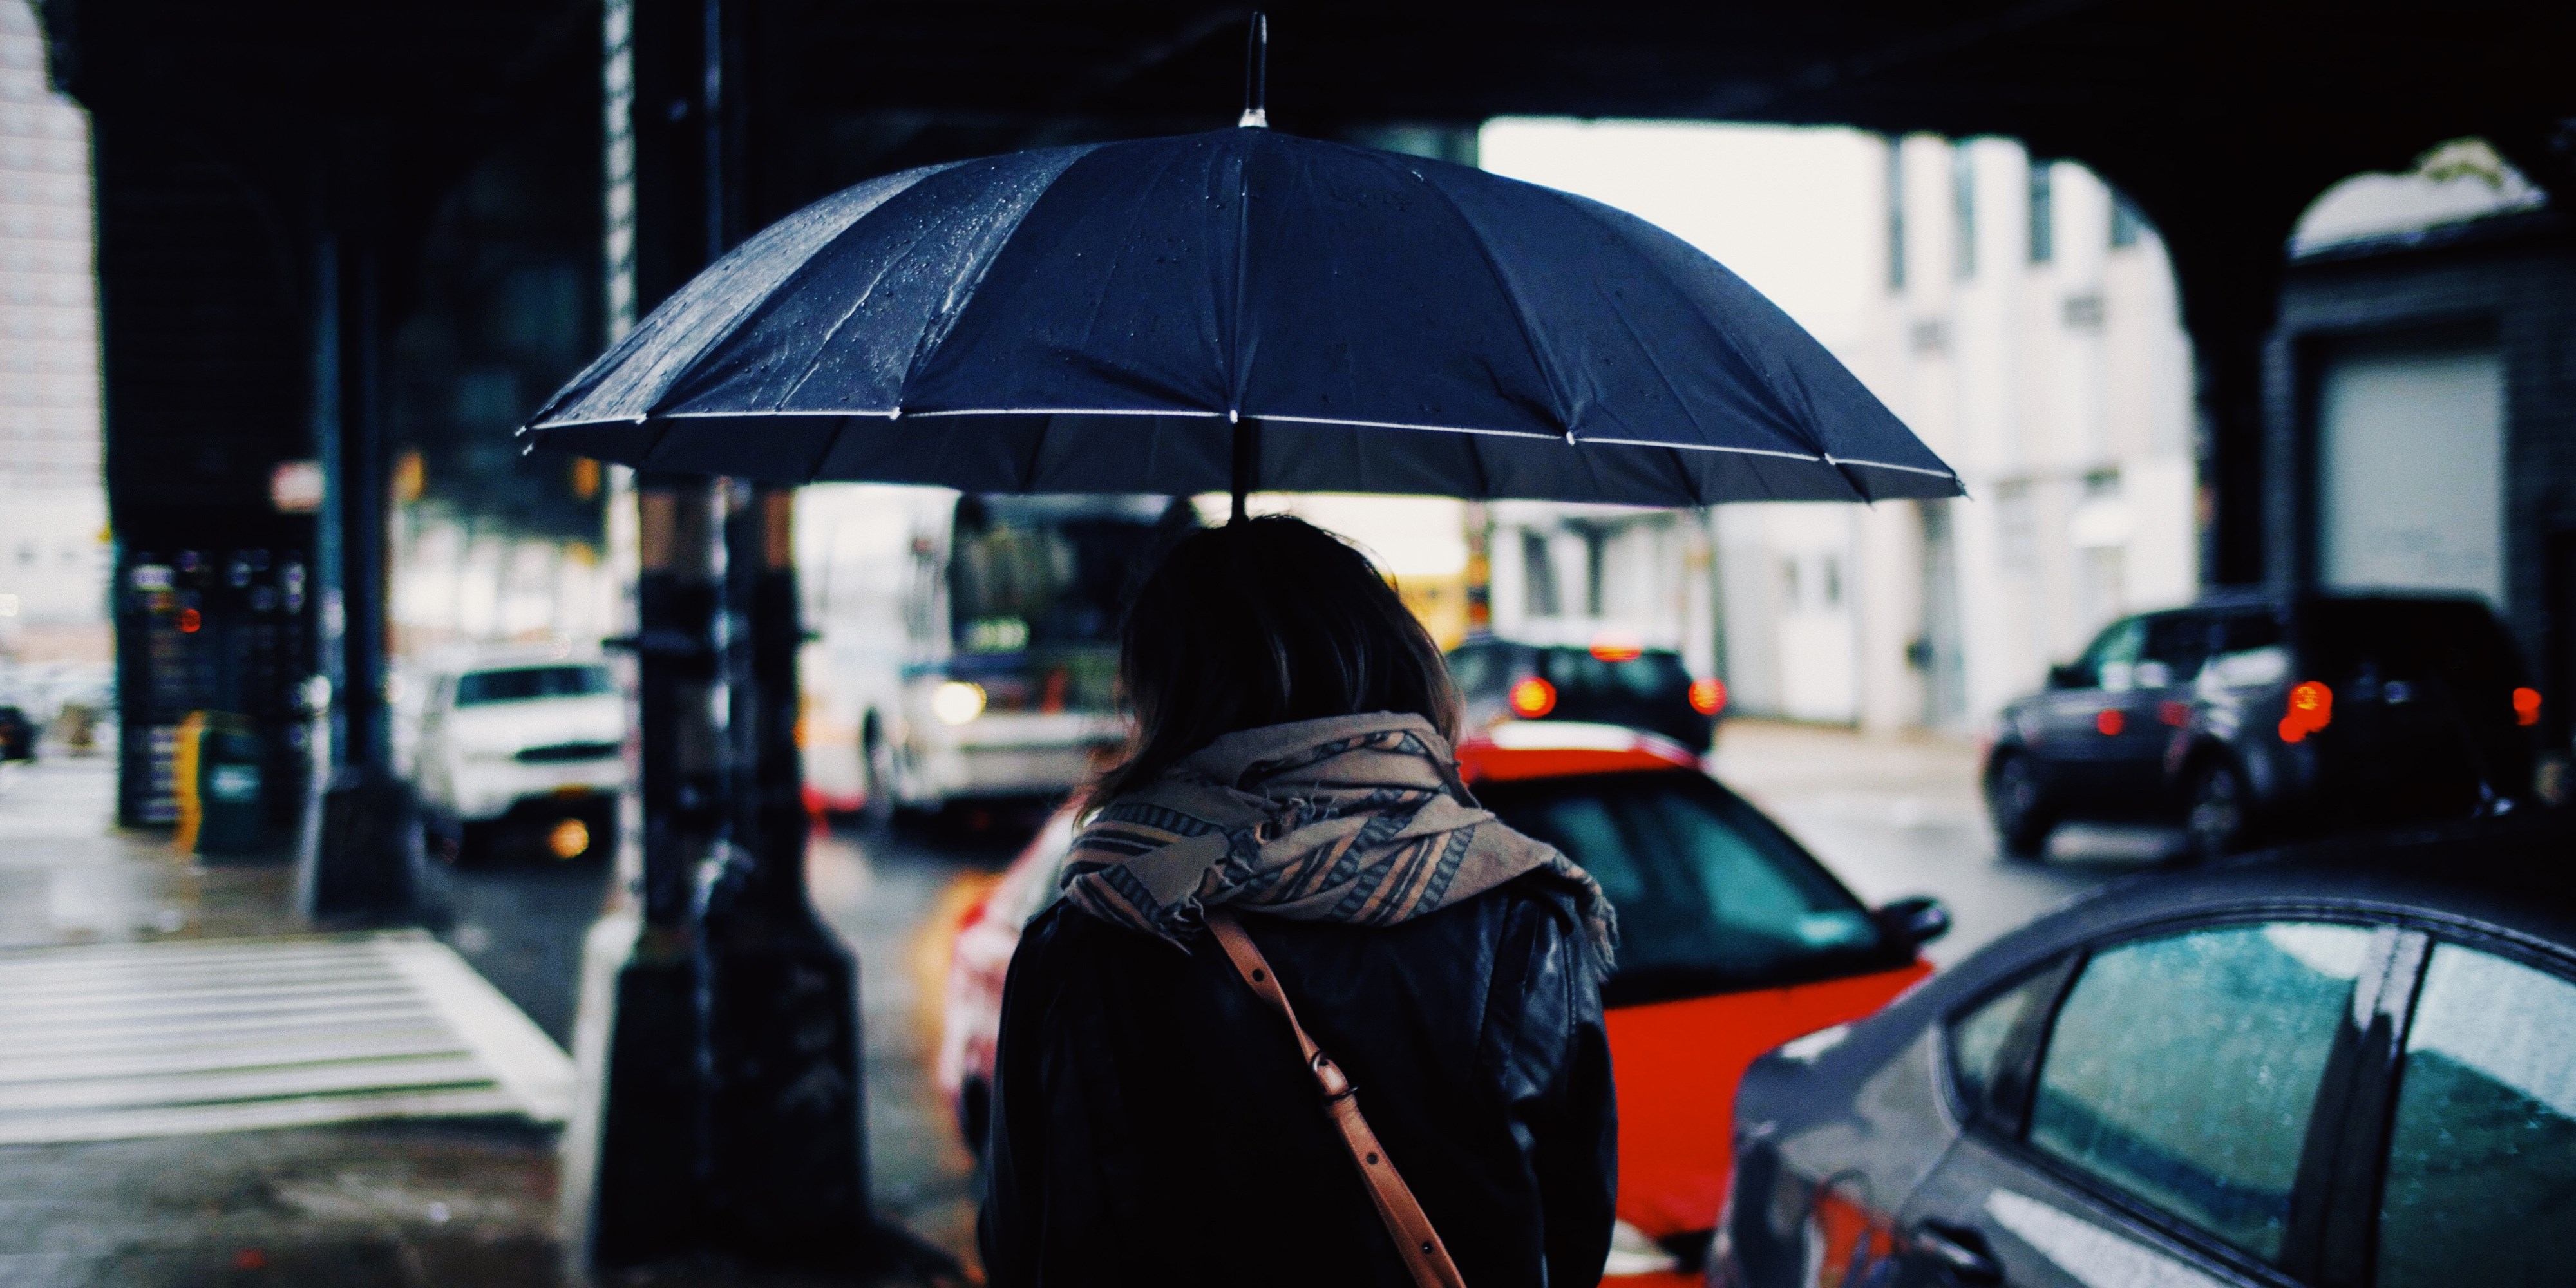 Persom med paraply på gate